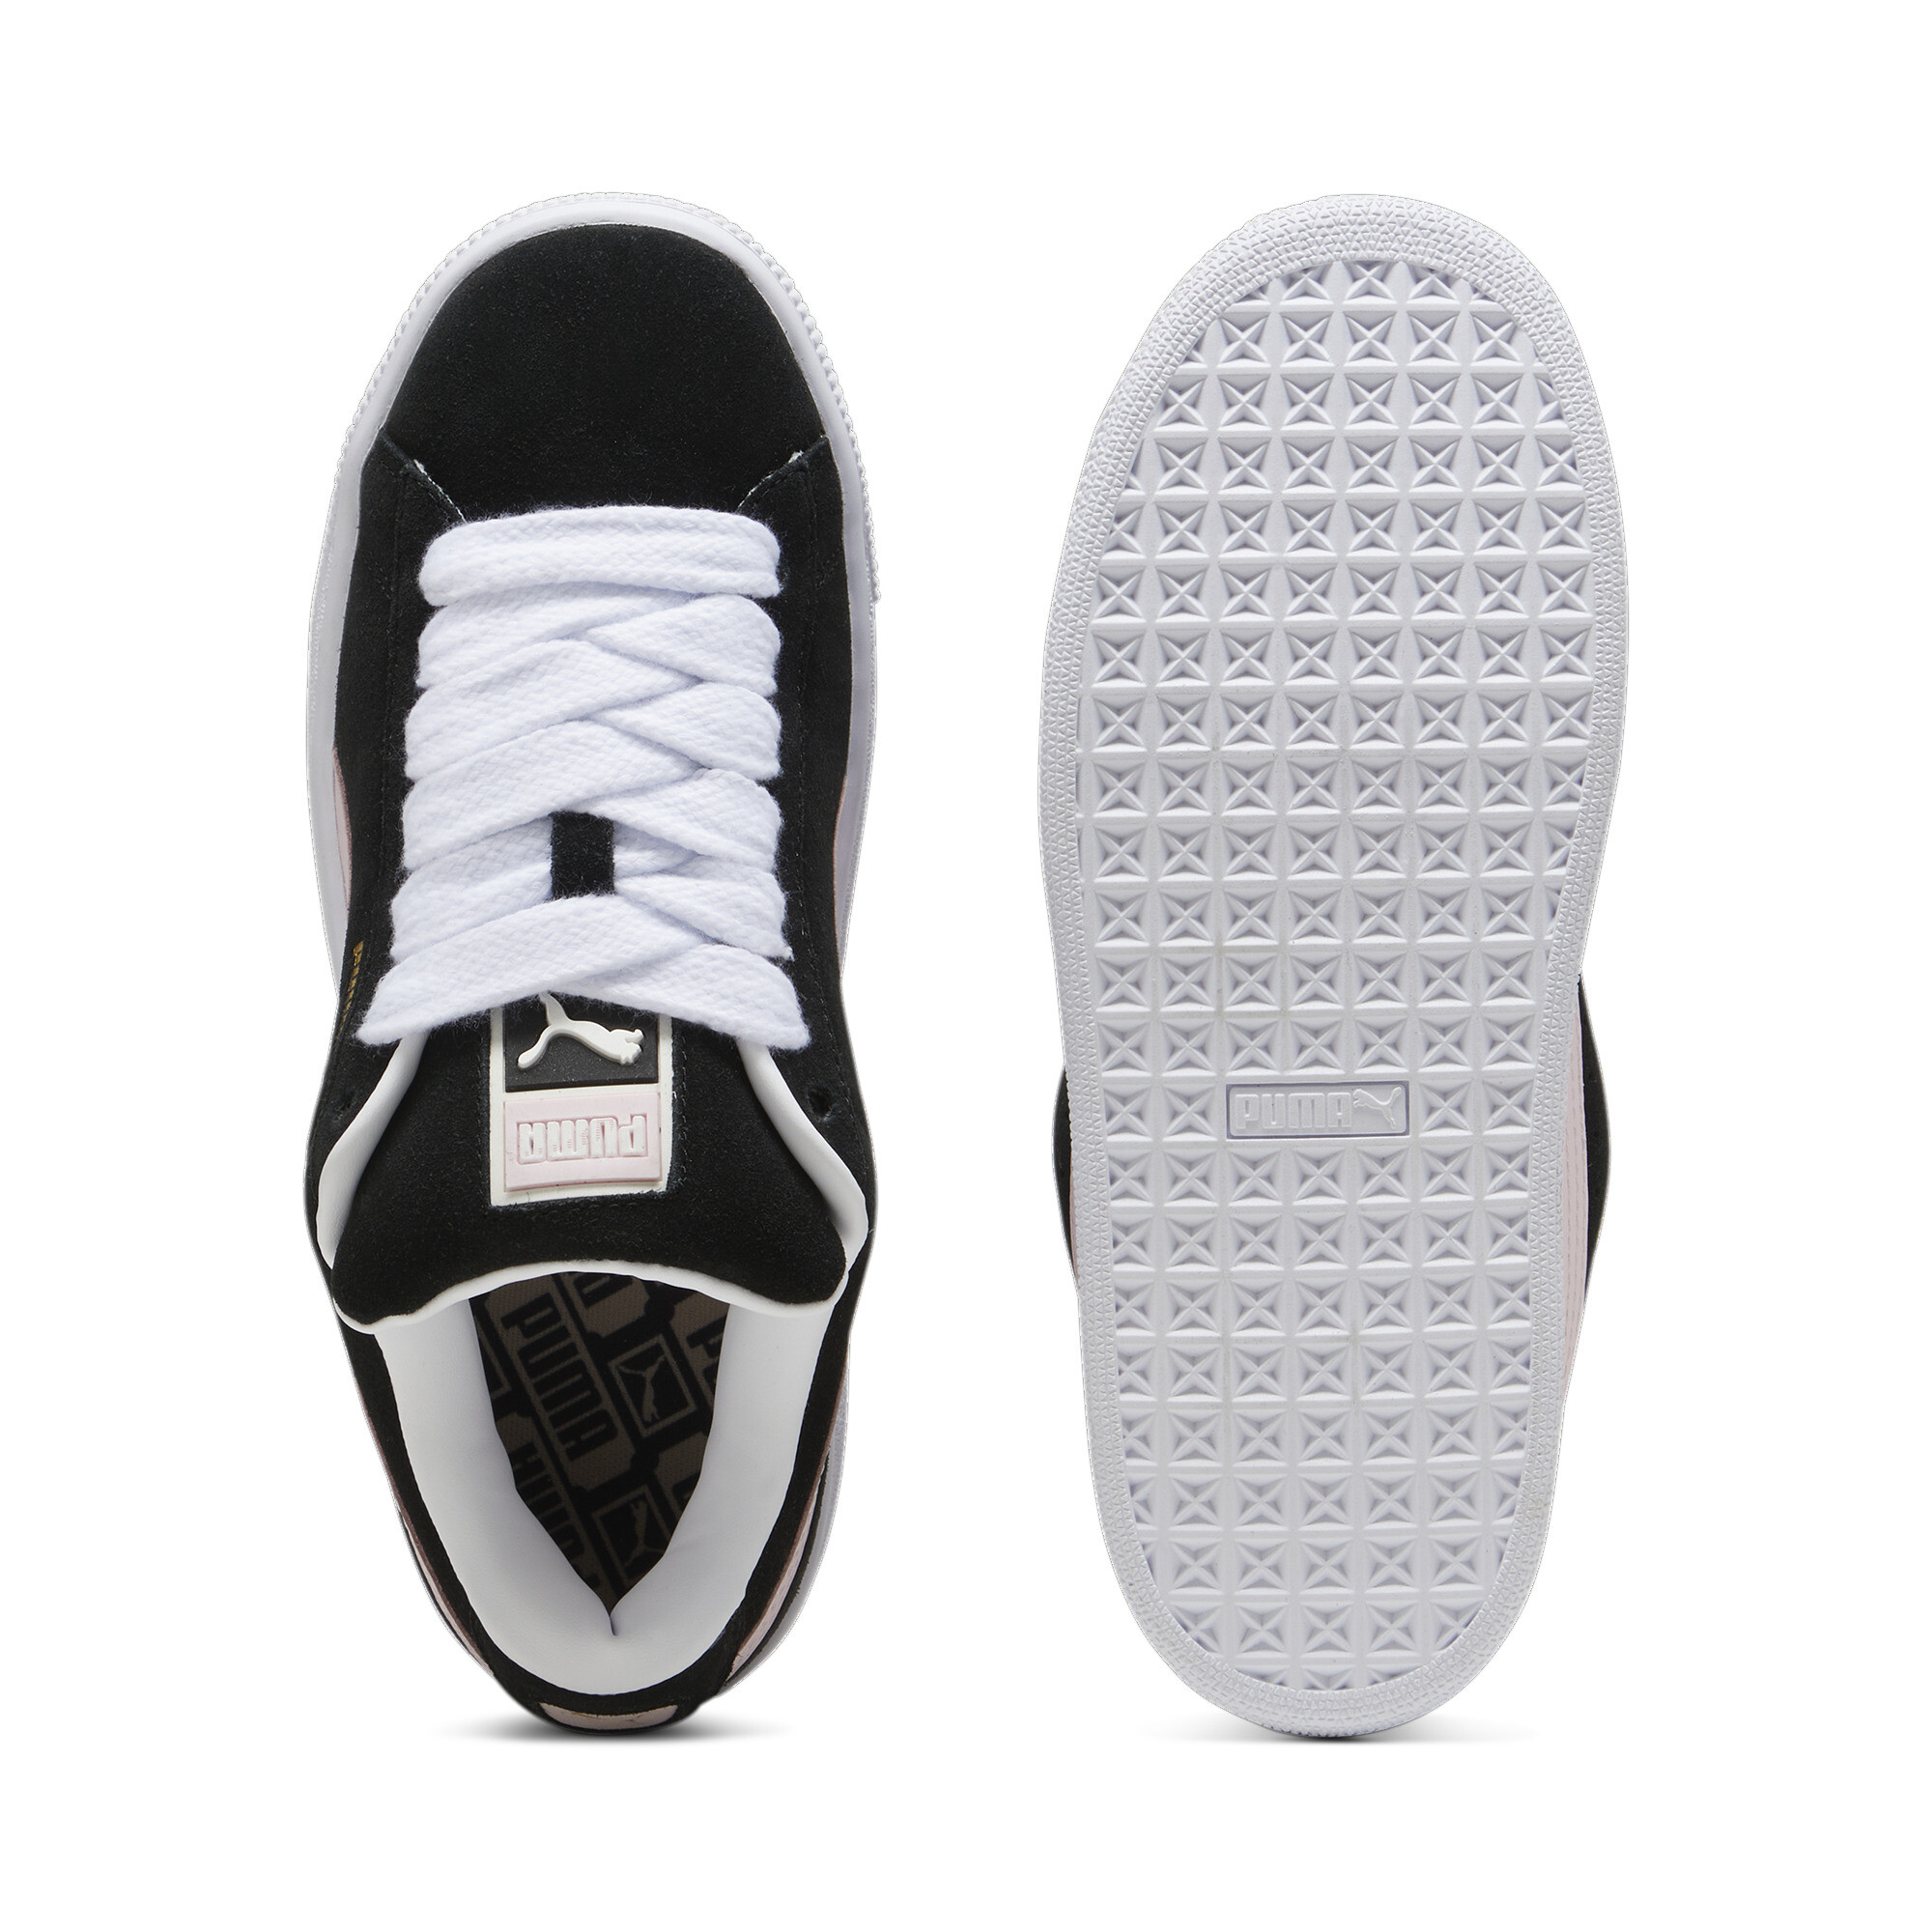 Puma Suede XL Sneakers Unisex, Black, Size 47, Shoes